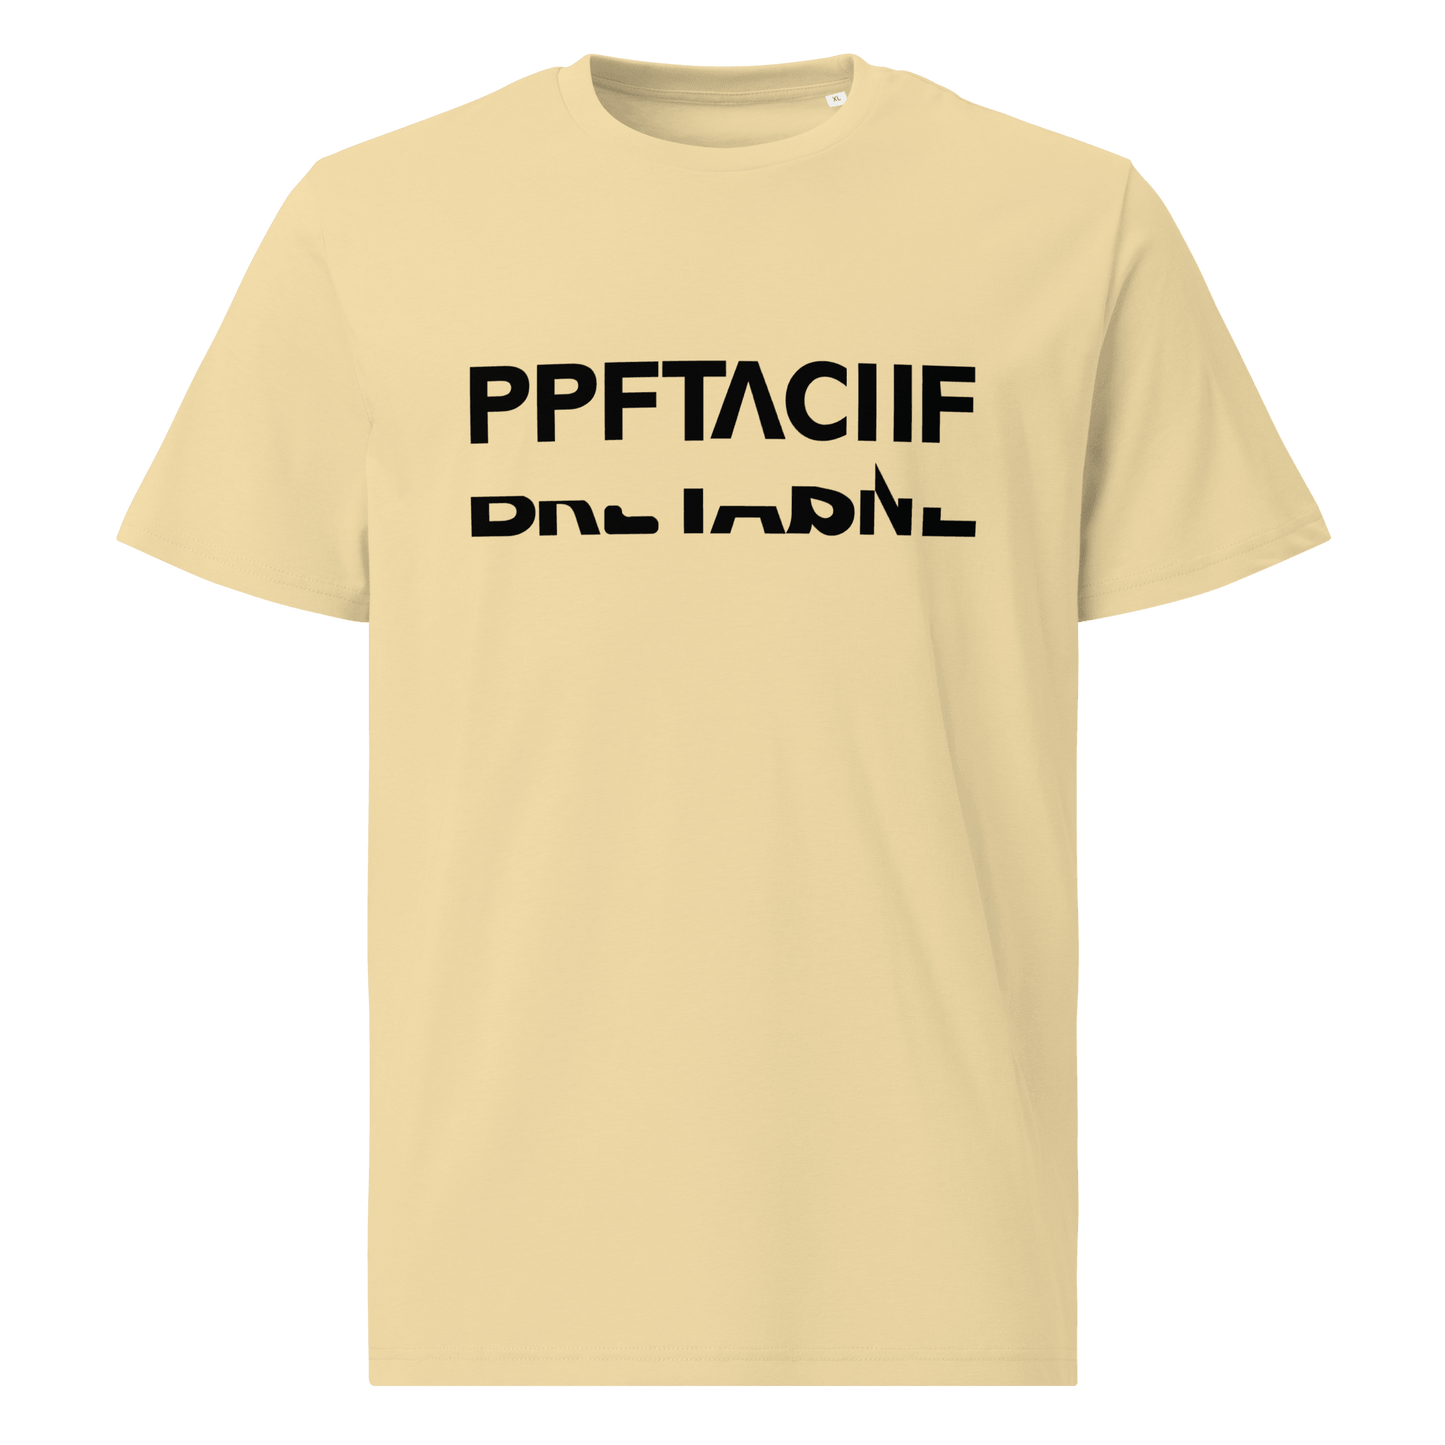 Tee-shirt unisexe en coton biologique avec texte caché "BRETAGNE"